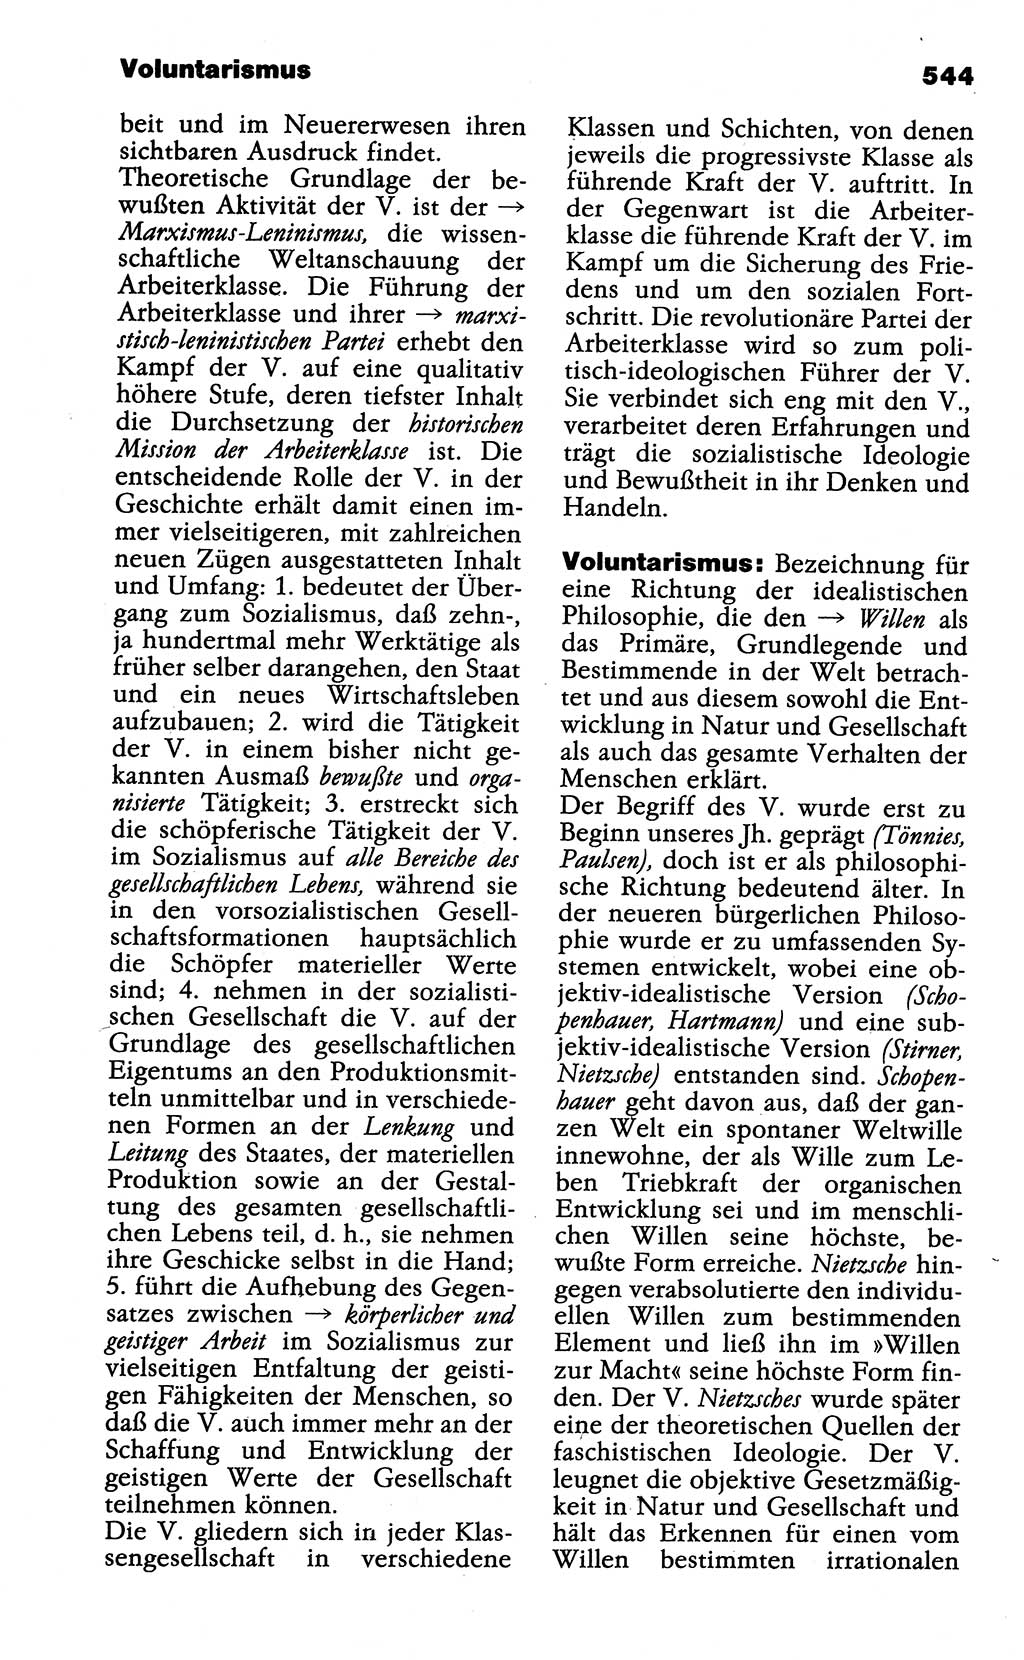 Wörterbuch der marxistisch-leninistischen Philosophie [Deutsche Demokratische Republik (DDR)] 1985, Seite 544 (Wb. ML Phil. DDR 1985, S. 544)